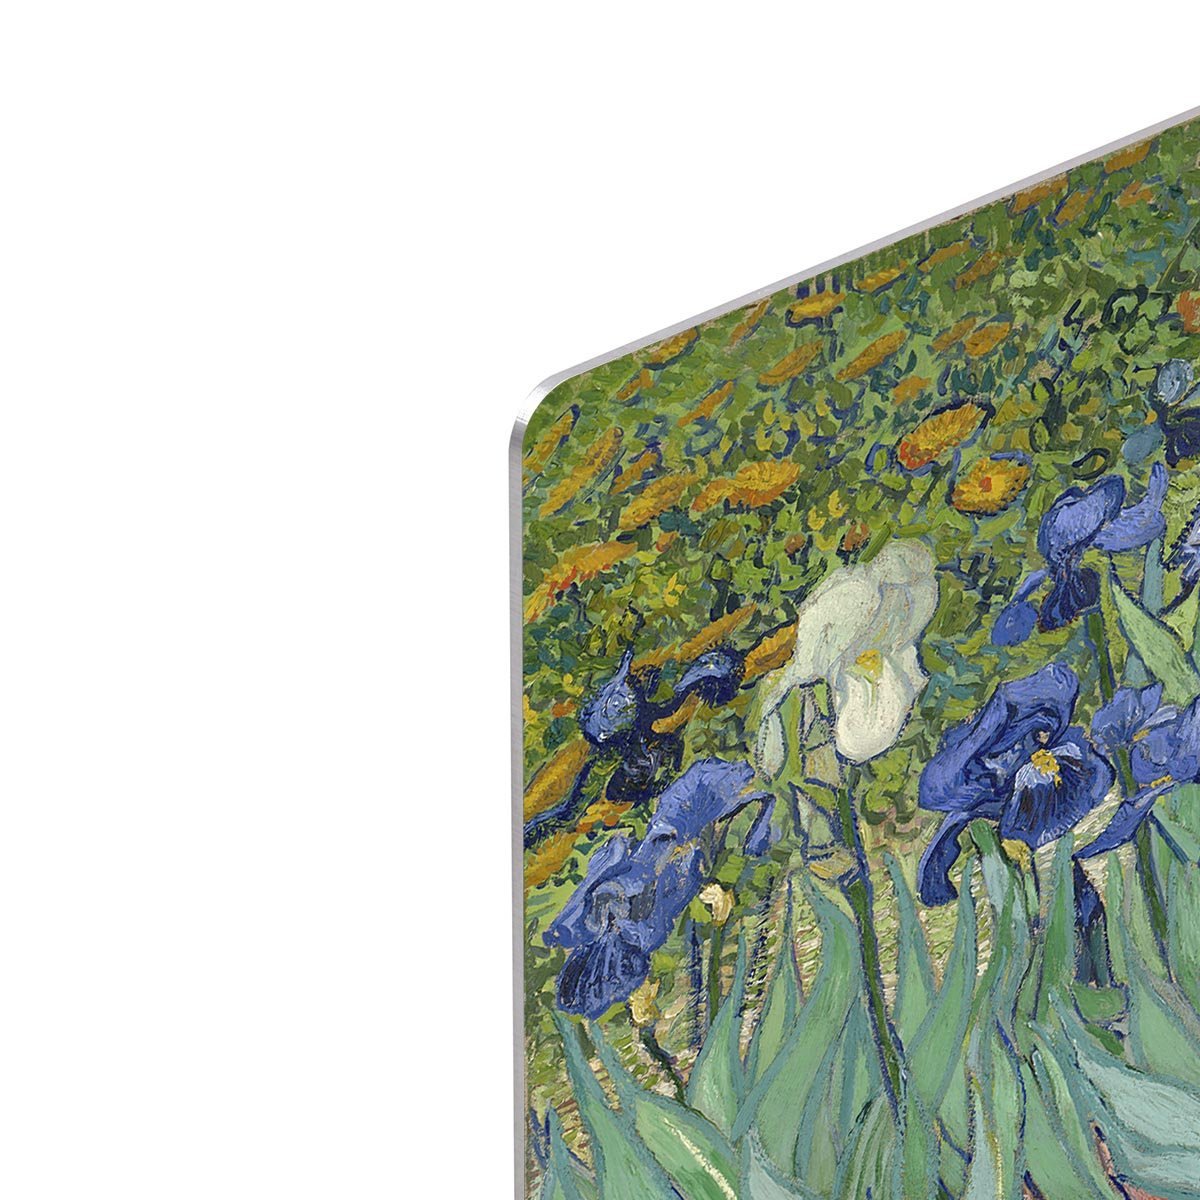 Irises by Van Gogh HD Metal Print